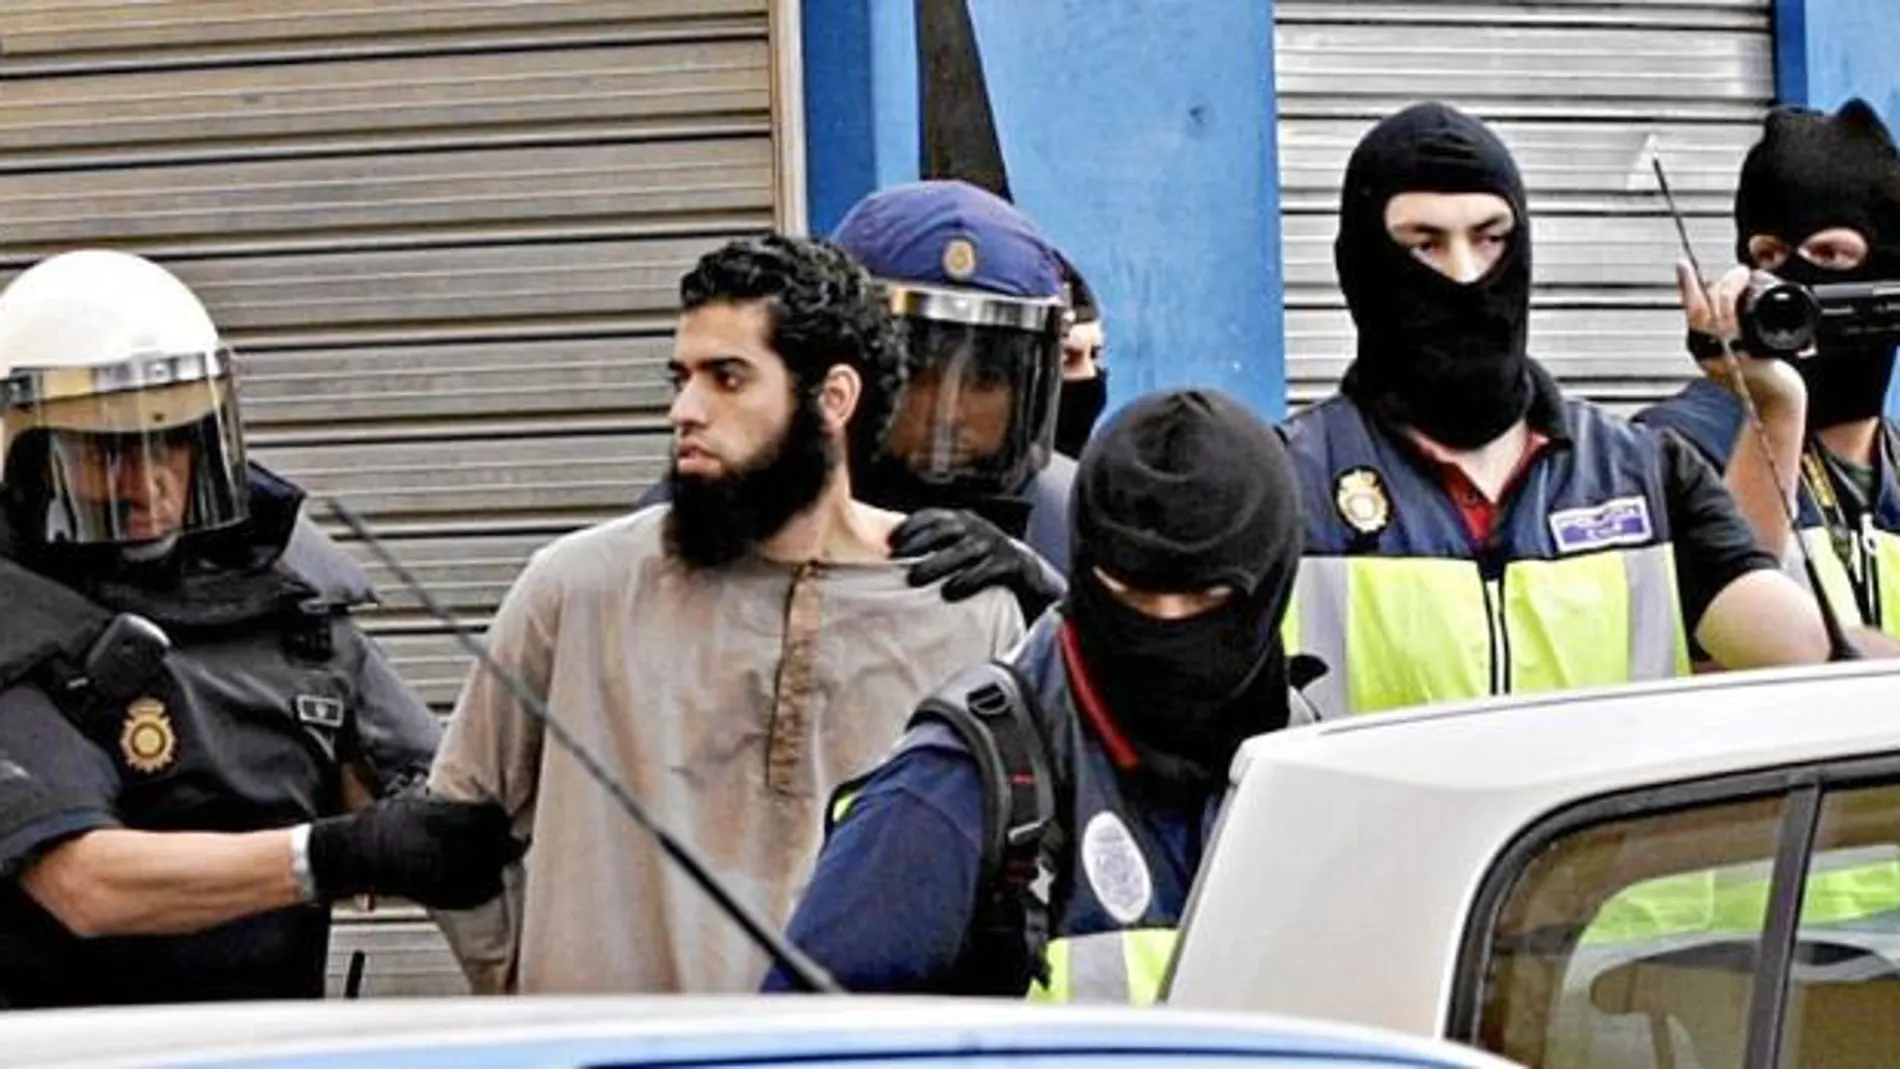 La Policía Nacional detuvo a nueve integrantes de una célula terrorista viculada al Daesh asentada en Ceuta y Melilla en septiembre